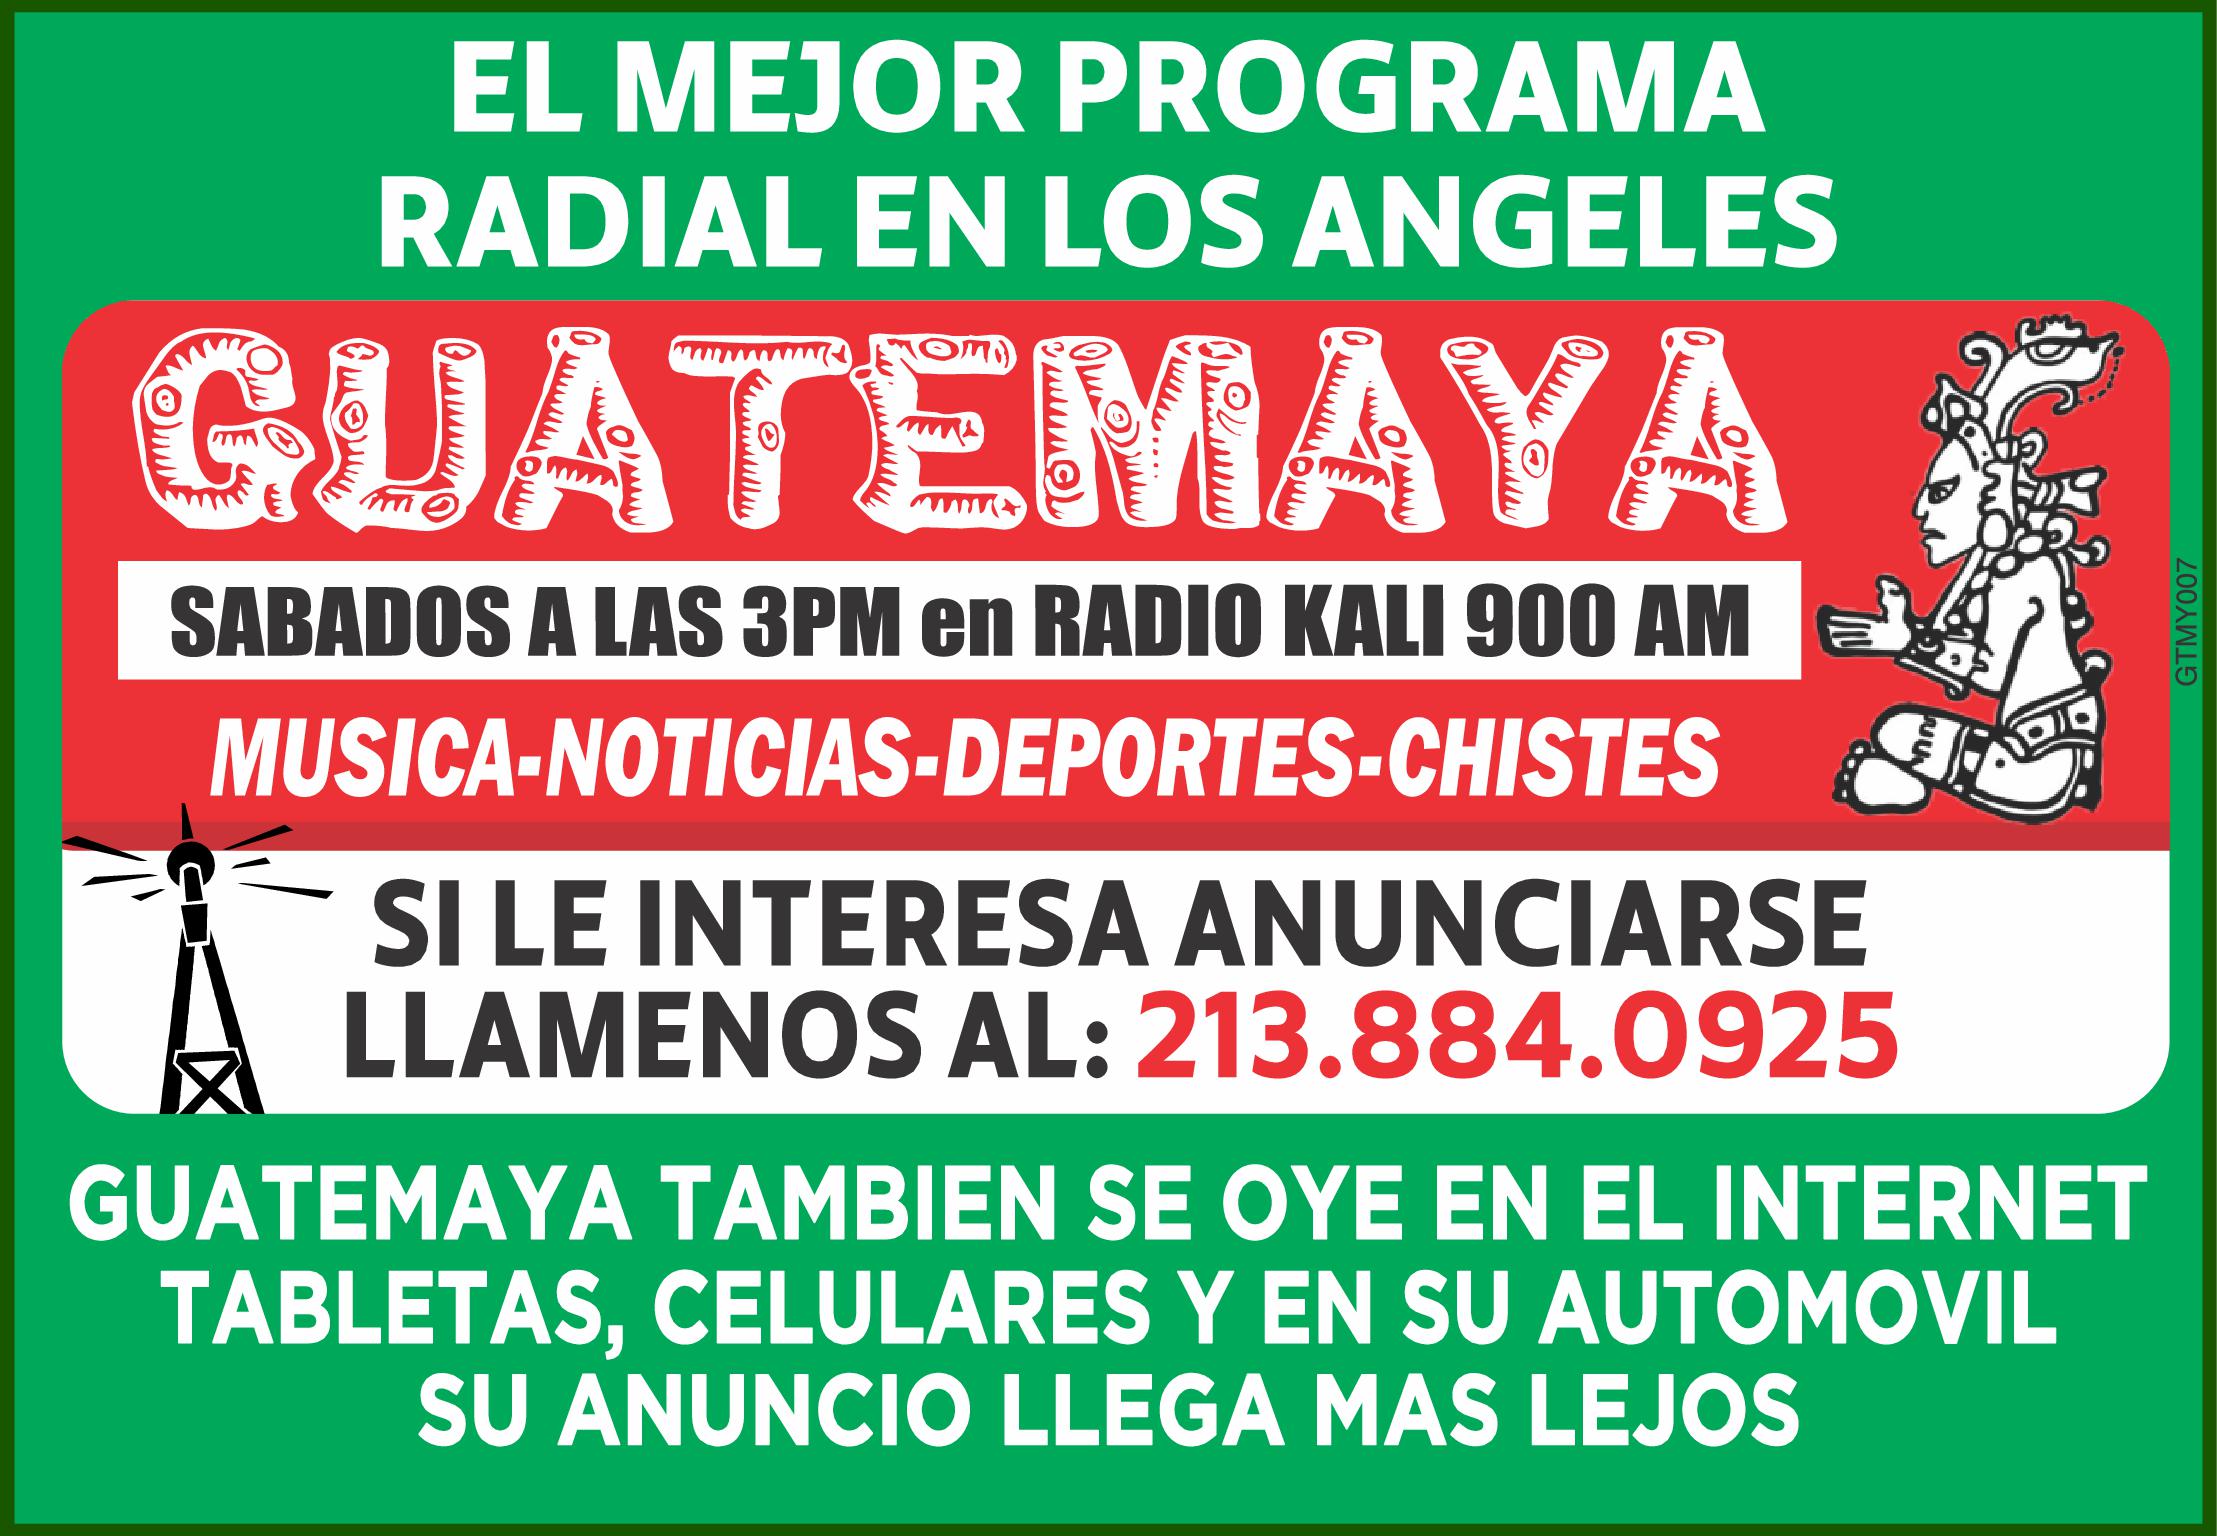 EL MEJOR PROGRAMA RADIAL EN LOS ANGELES GUATEMAYA SABADOS LAS 3PM en RADIO KALI 900 AM TUNE IN MUSICA NOTICIAS DEPORTES CHISTES SI LE INTERESA ANUNCIARSE LLAMENOS AL 213.884.0925 GTMY007